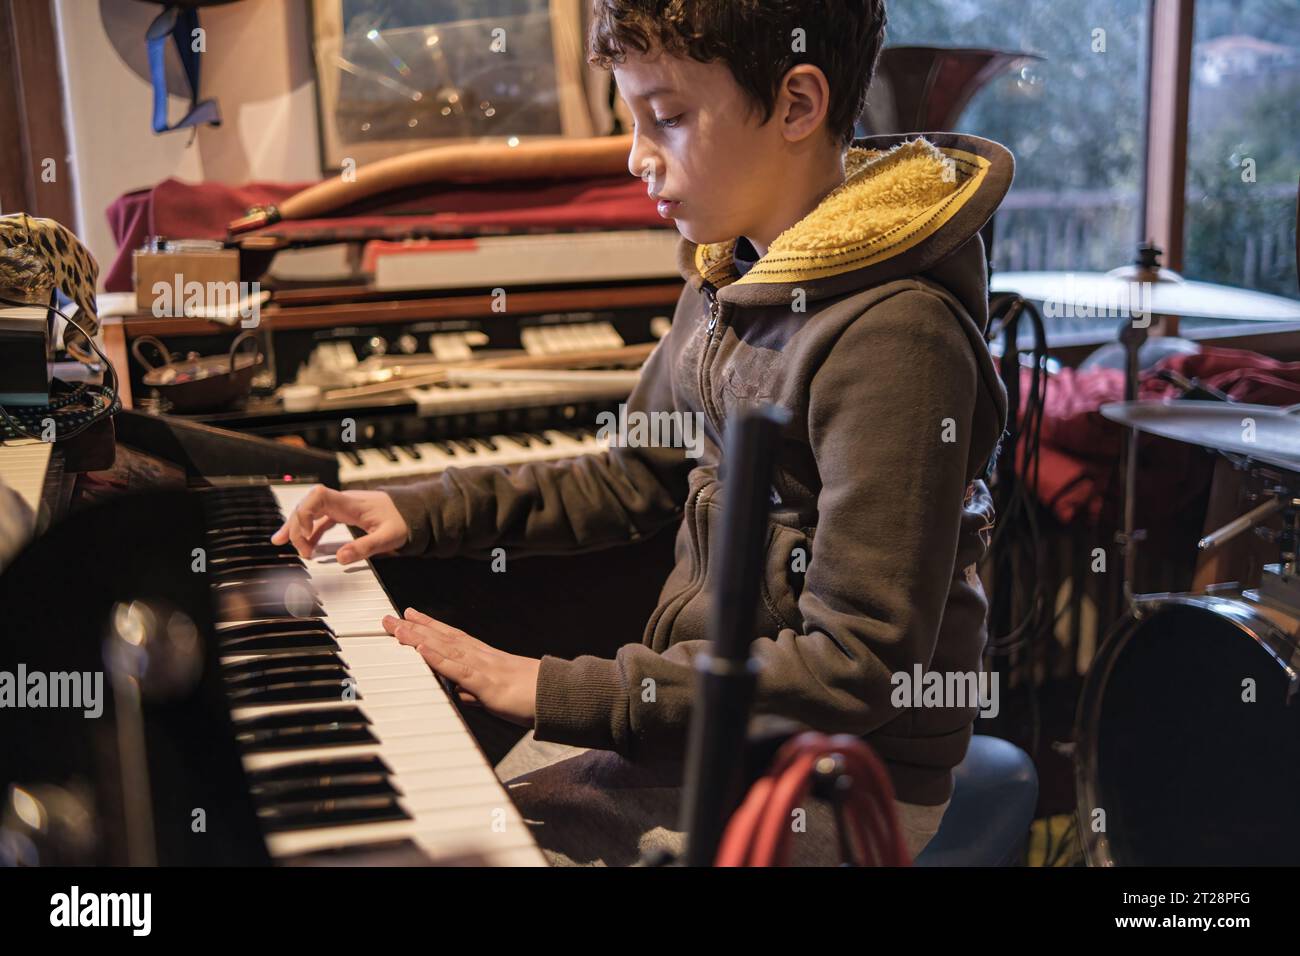 Un bambino di 10 anni mostra il suo talento, suonando appassionatamente l'organo in una sala prove, immersi nel mondo della musica. Foto Stock